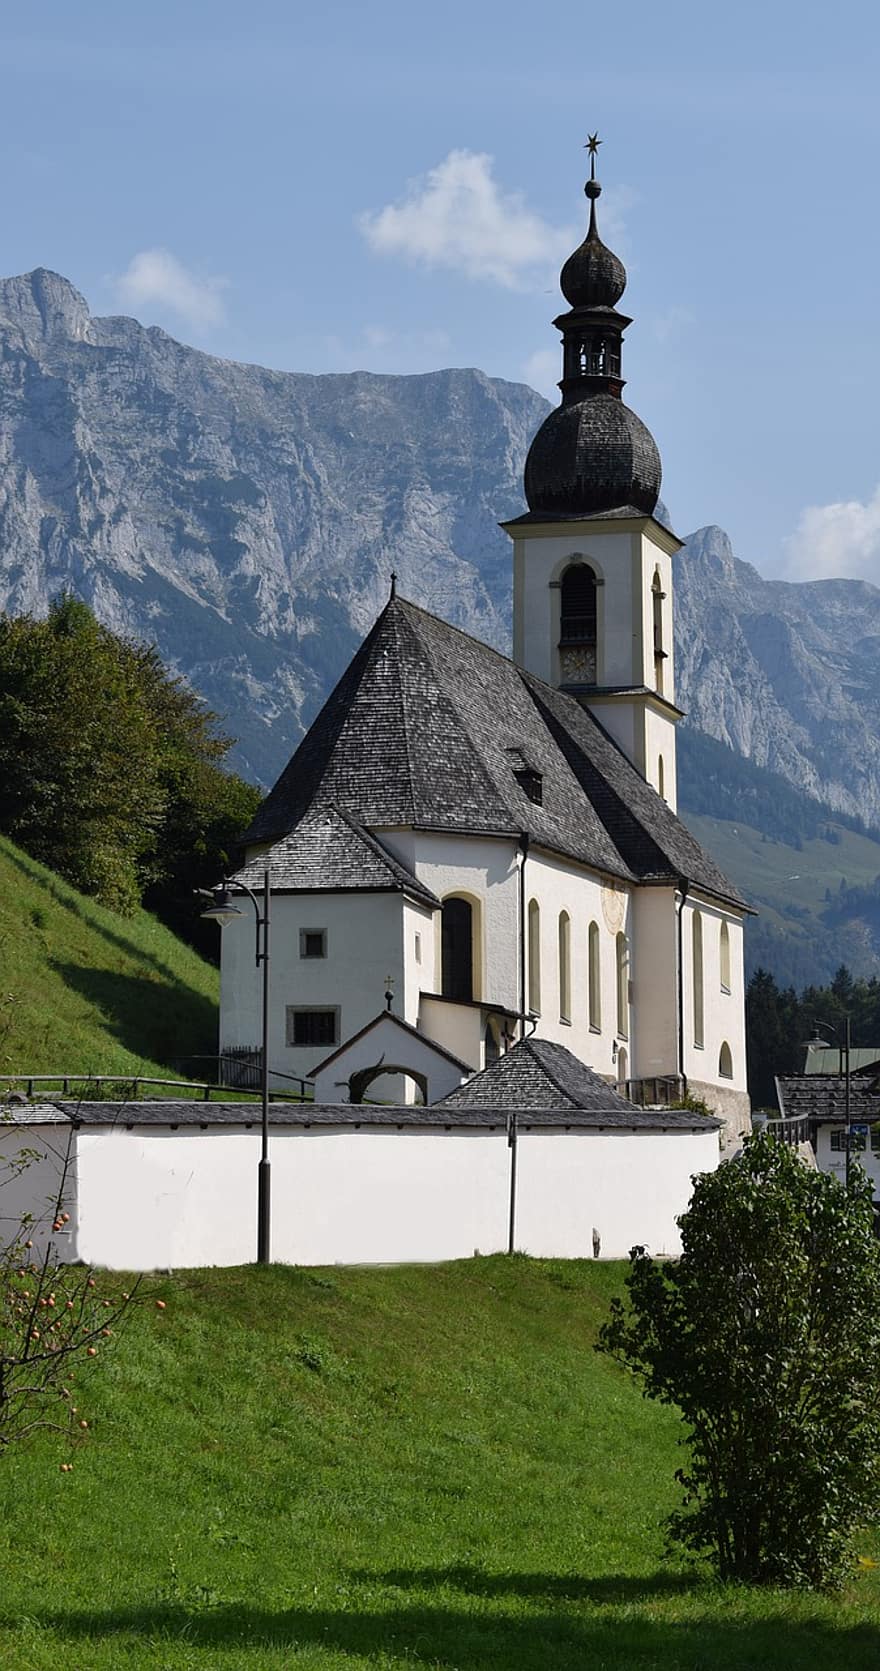 kirkko, kappeli, arkkitehtuuri, rakennus, kellotapuli, rakenne, julkisivu, Sakraali arkkitehtuuri, Berchtesgaden, Saksa, Baijeri